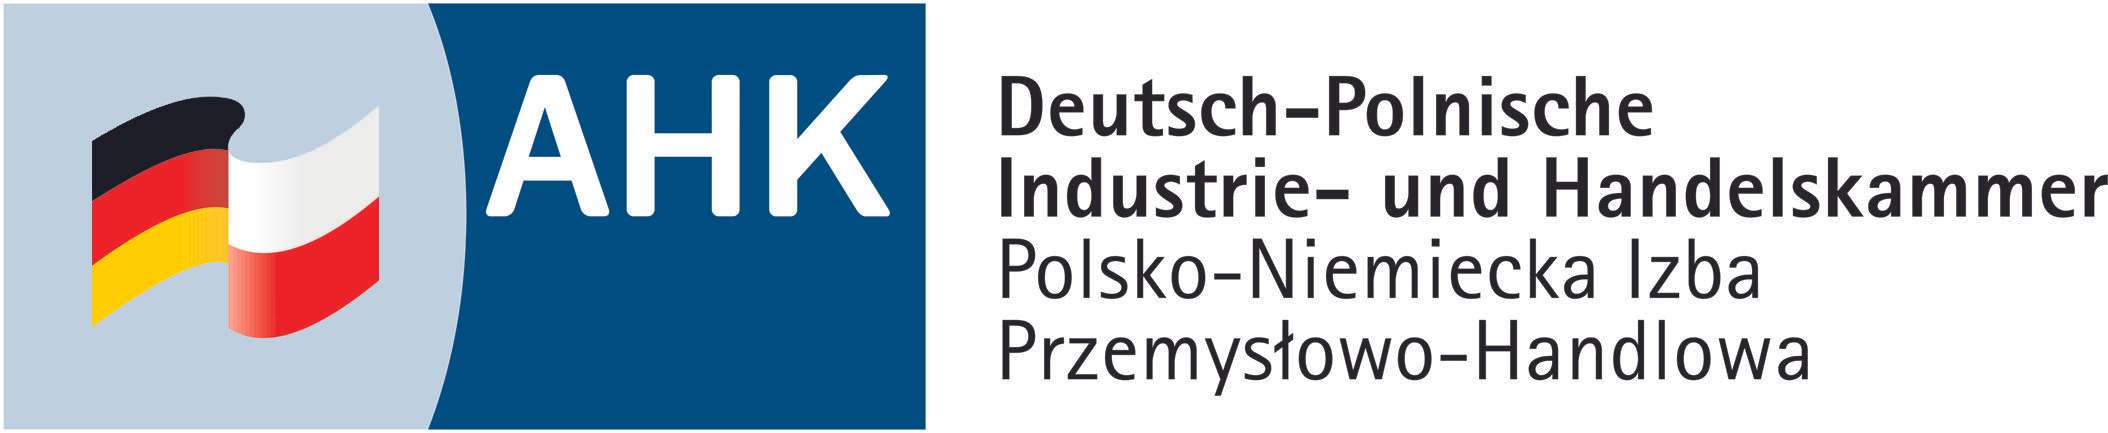 Polsko-Niemiecka Izba Przemysłowo Handlowa 